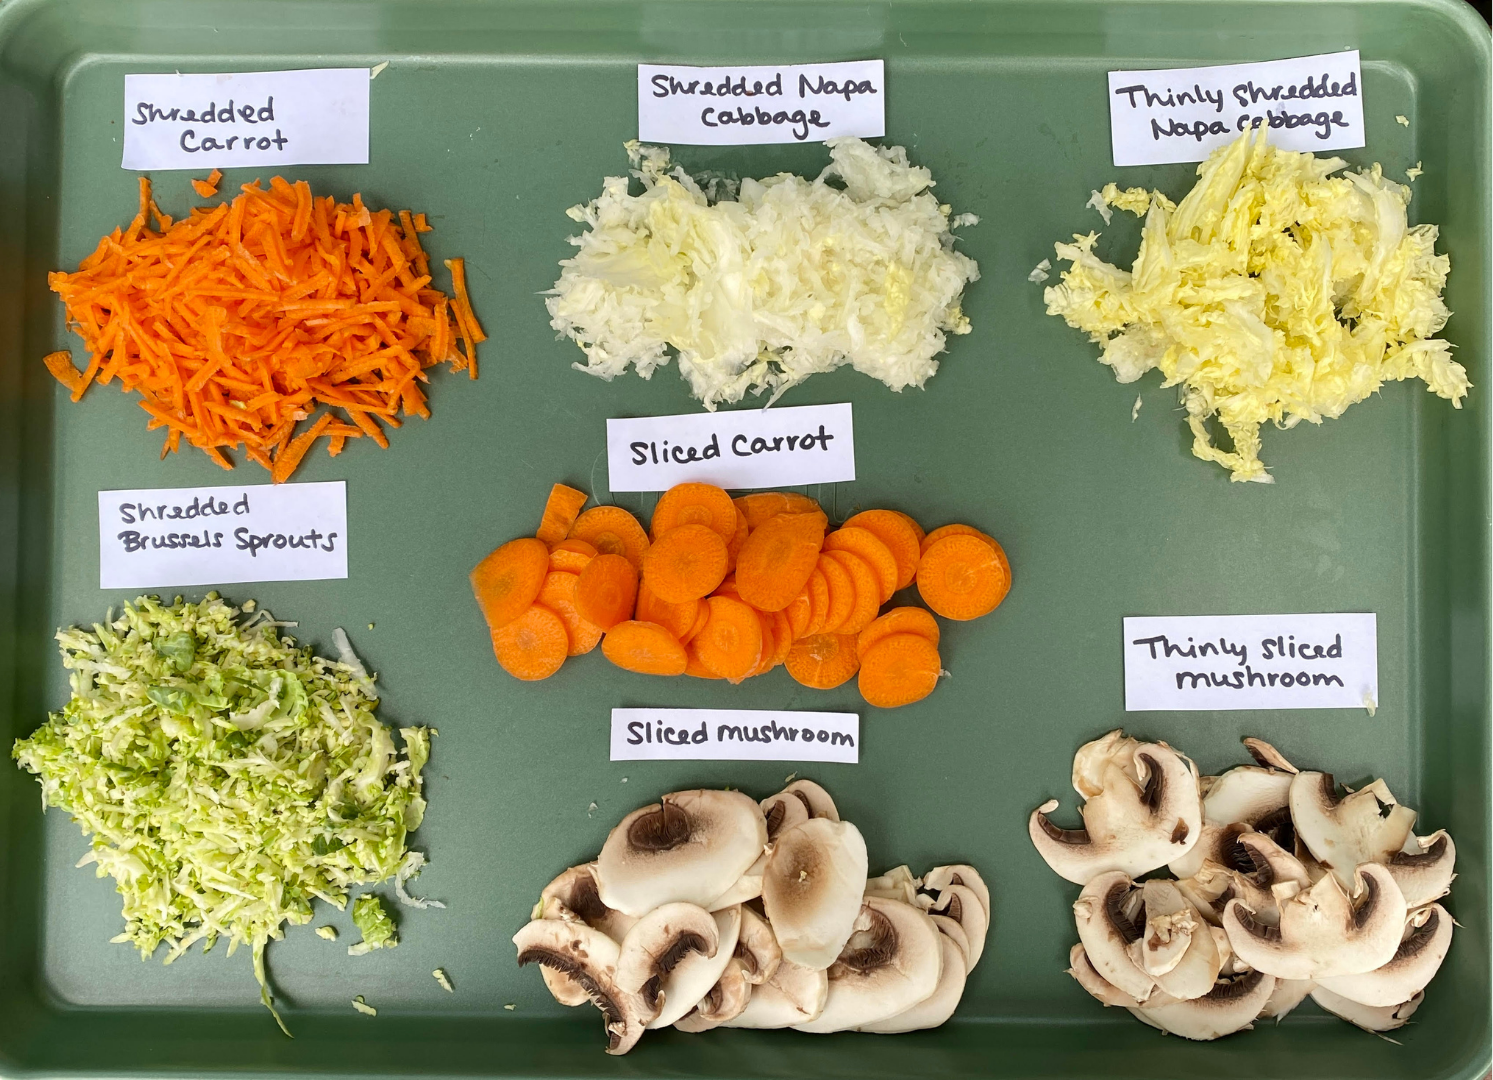 From left to right: Shredded carrot, shredded Napa cabbage, thinly shredded Napa cabbage, sliced carrots, shredded Brussels sprouts, sliced mushrooms, and thinly sliced mushrooms.